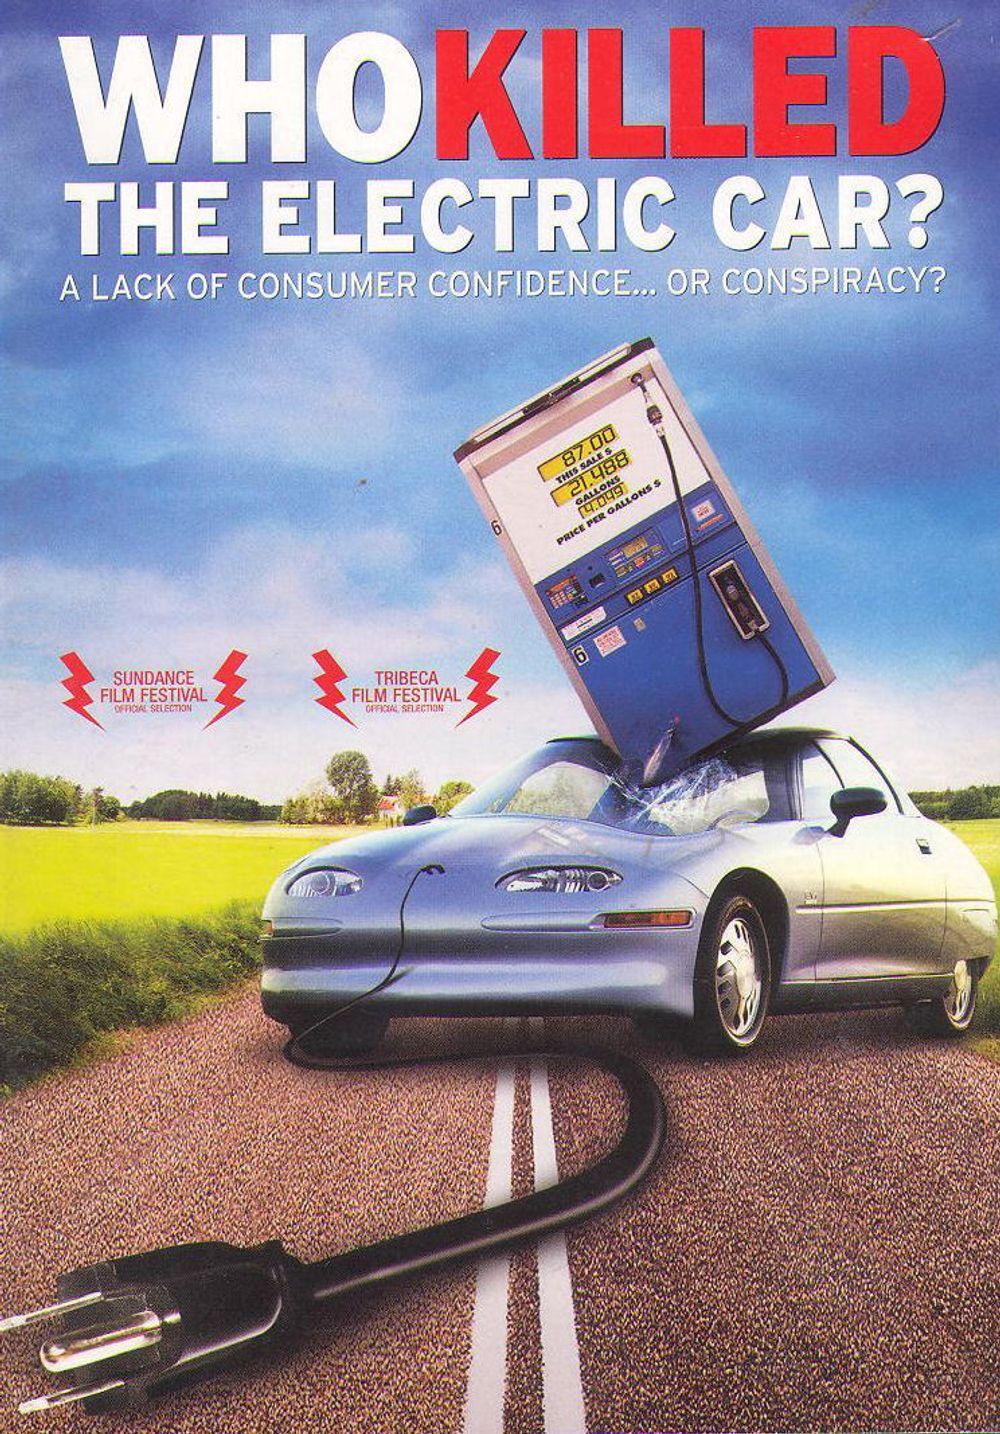 OPPFØLGER: I 2006 kom dokumentarfilmen om elbilens død. Bare tre år senere tar elbilen hevn, ifølge oppfølgerfilmen.